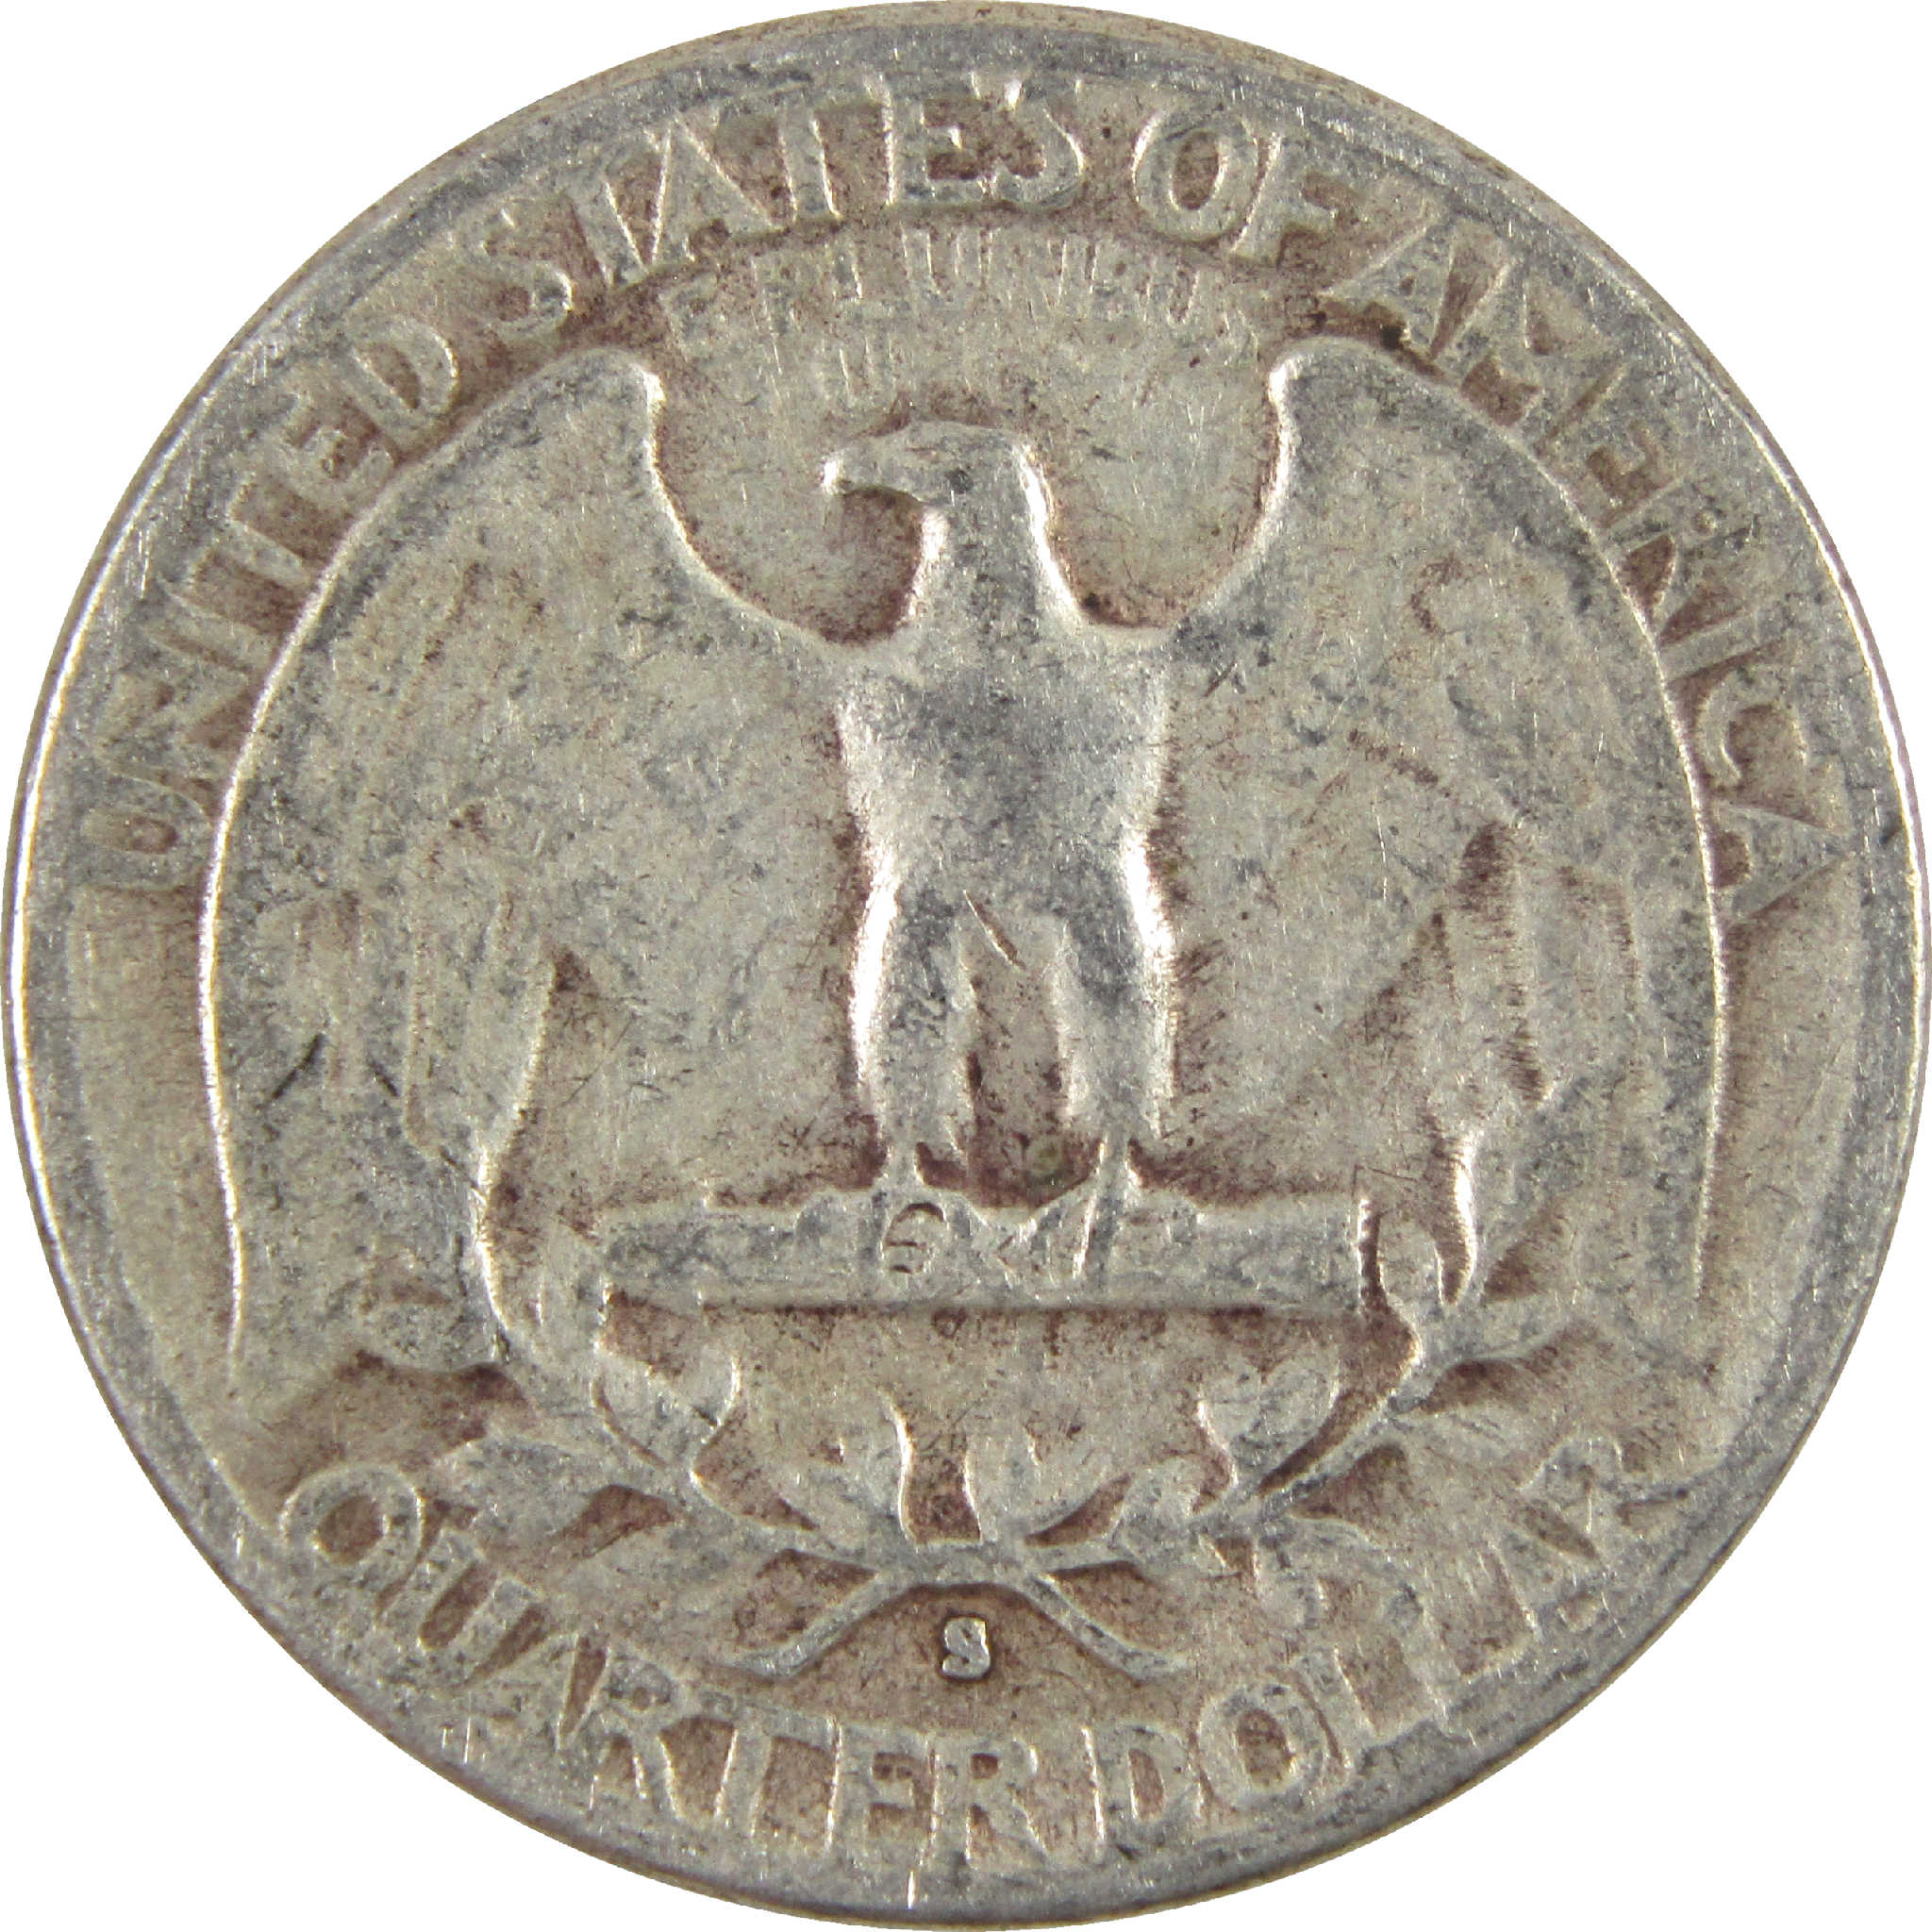 1948 S Washington Quarter VG Very Good Silver 25c Coin